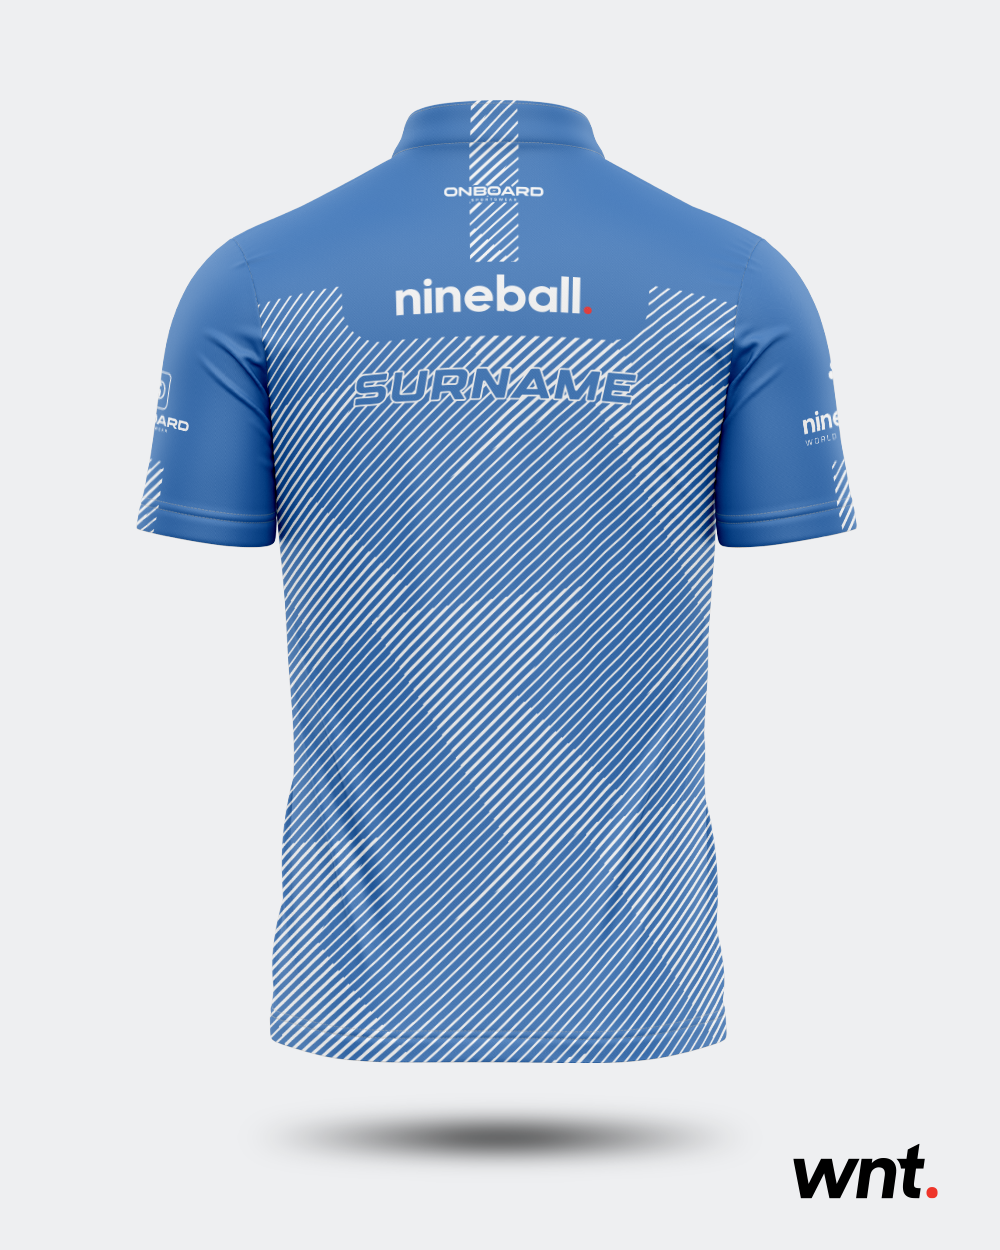 Essential Nineball-Trikot – Himmelblau